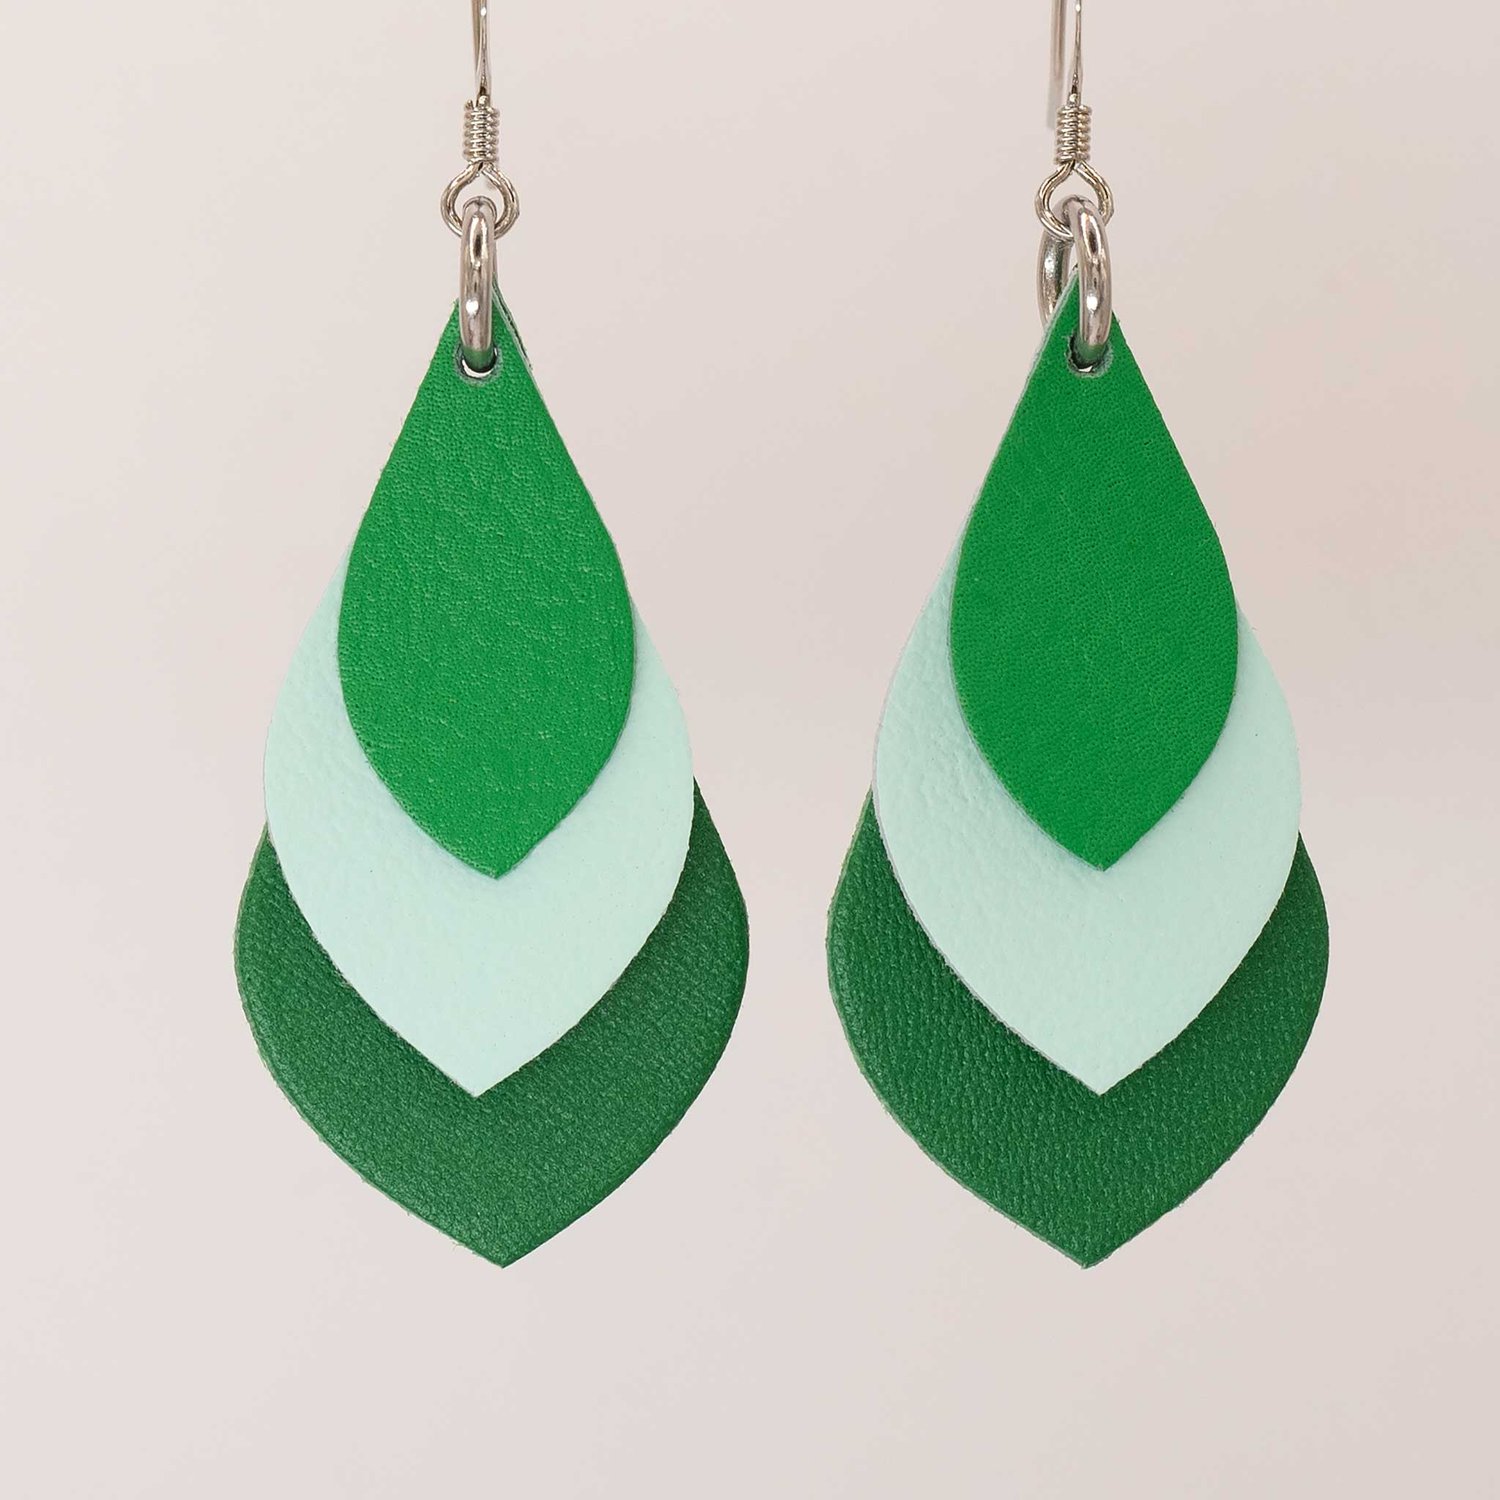 Image of Australian leather teardrop earrings - greens with mint green